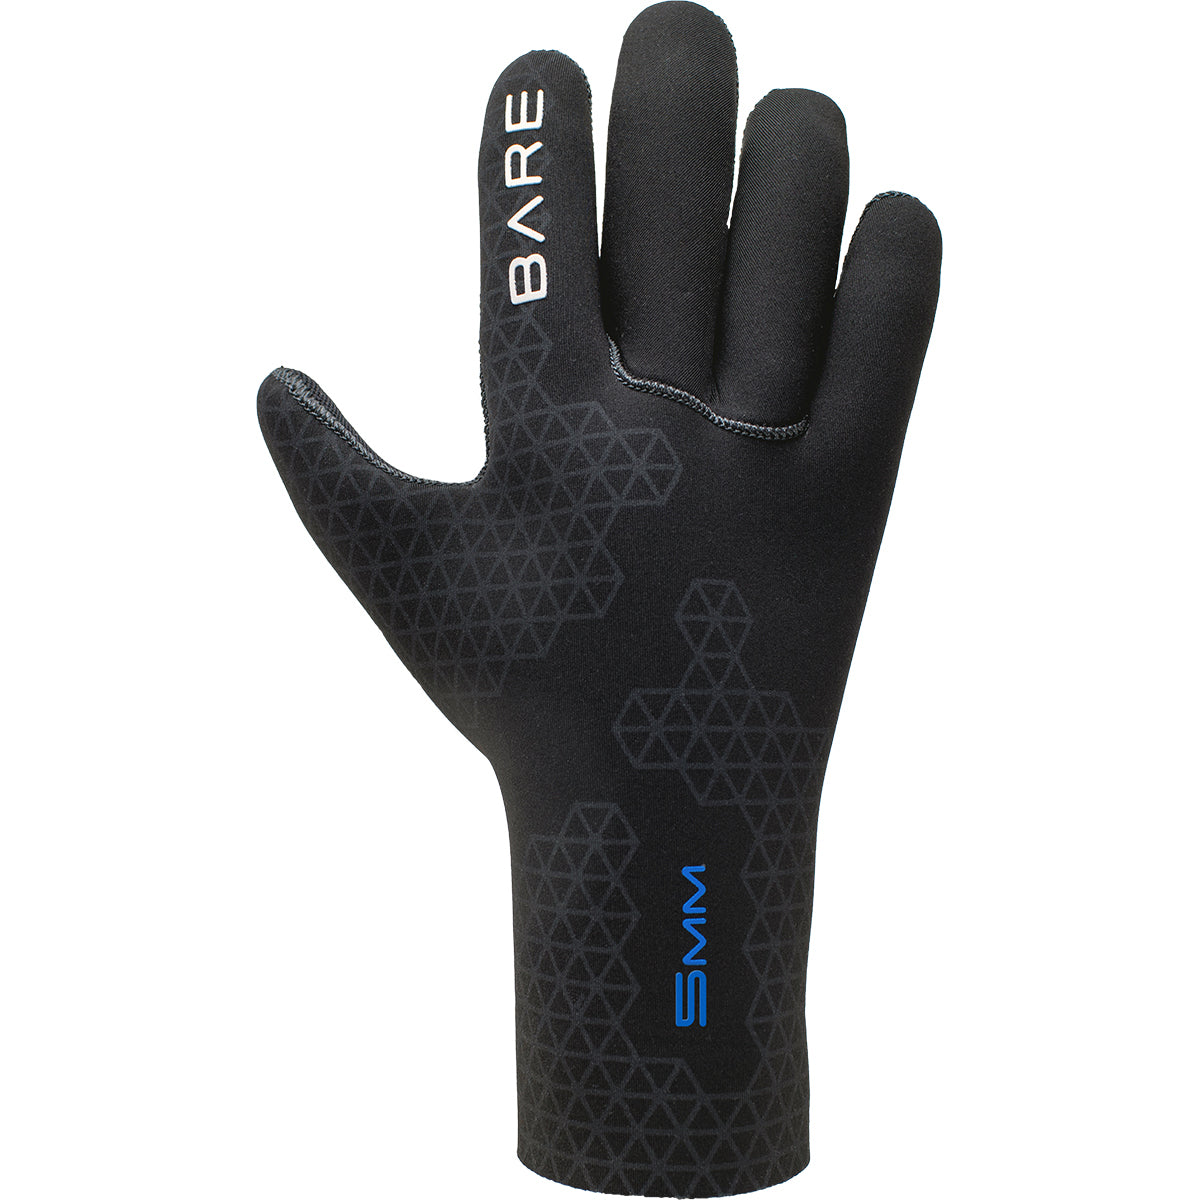 ONLY S-Flex 5mm neoprene gloves